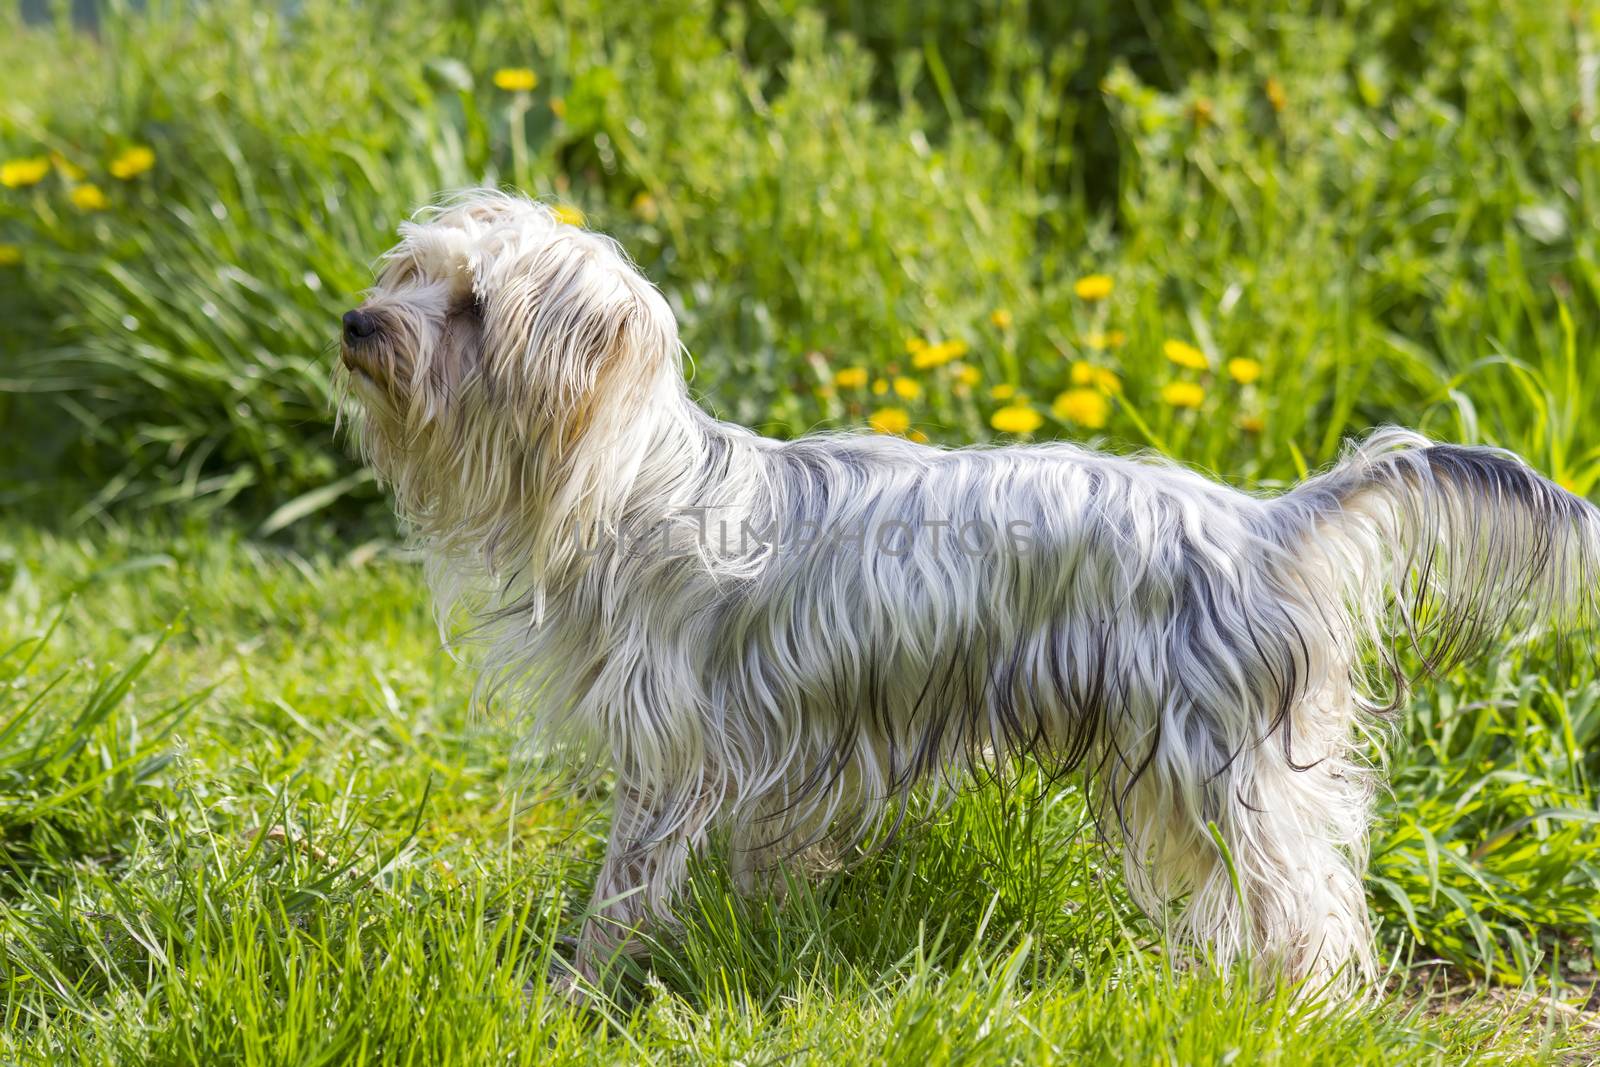 yorkshire terrier in the garden by miradrozdowski